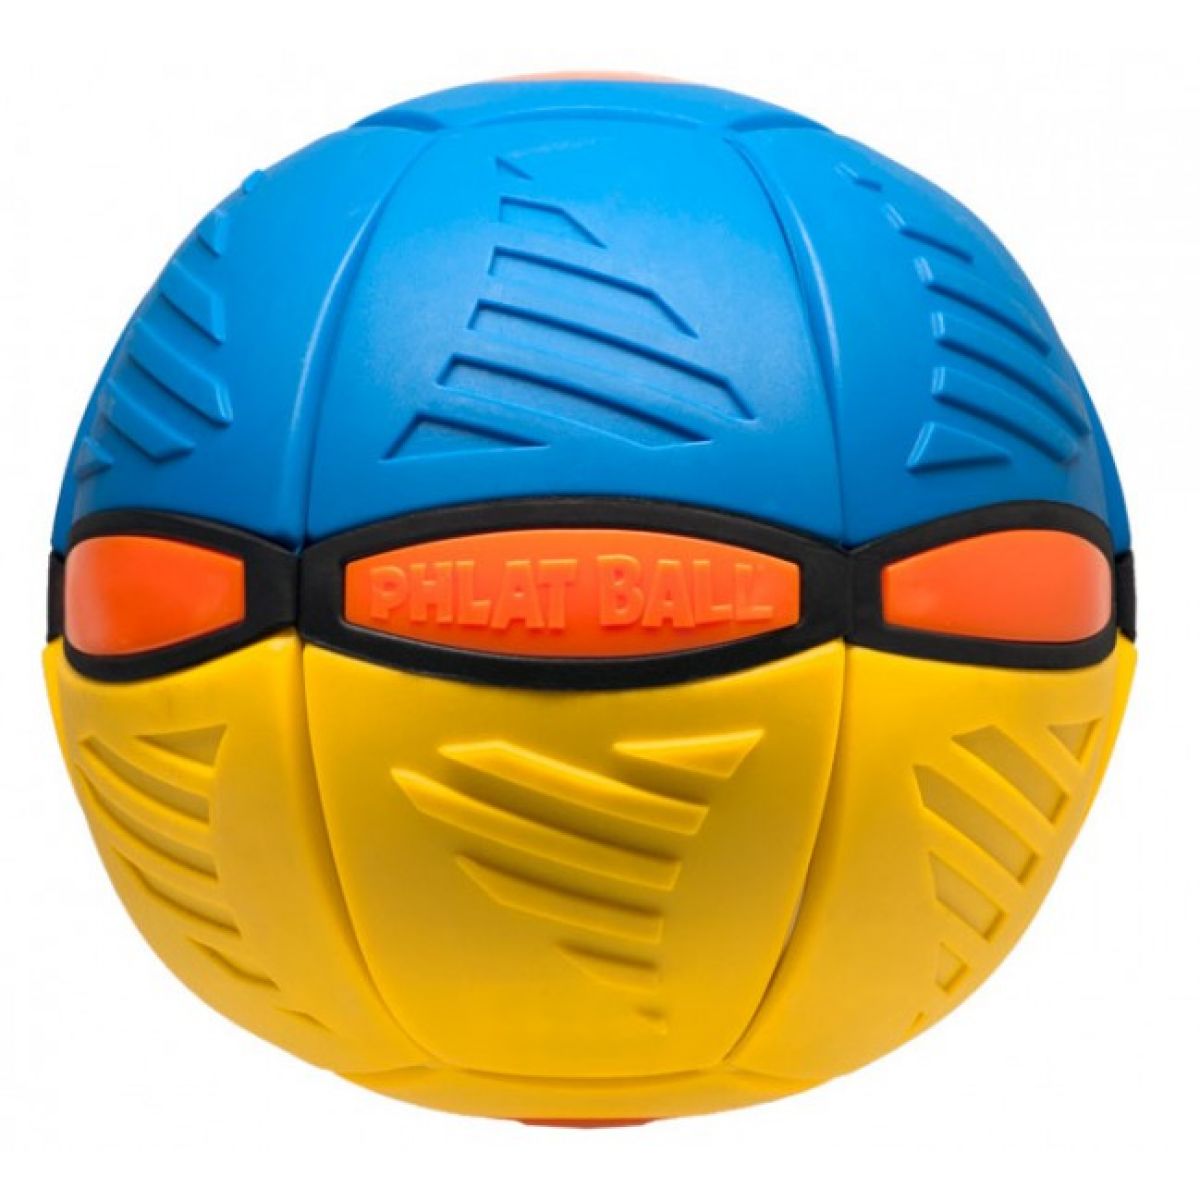 Phlat Ball V3 - Žluto-modrá